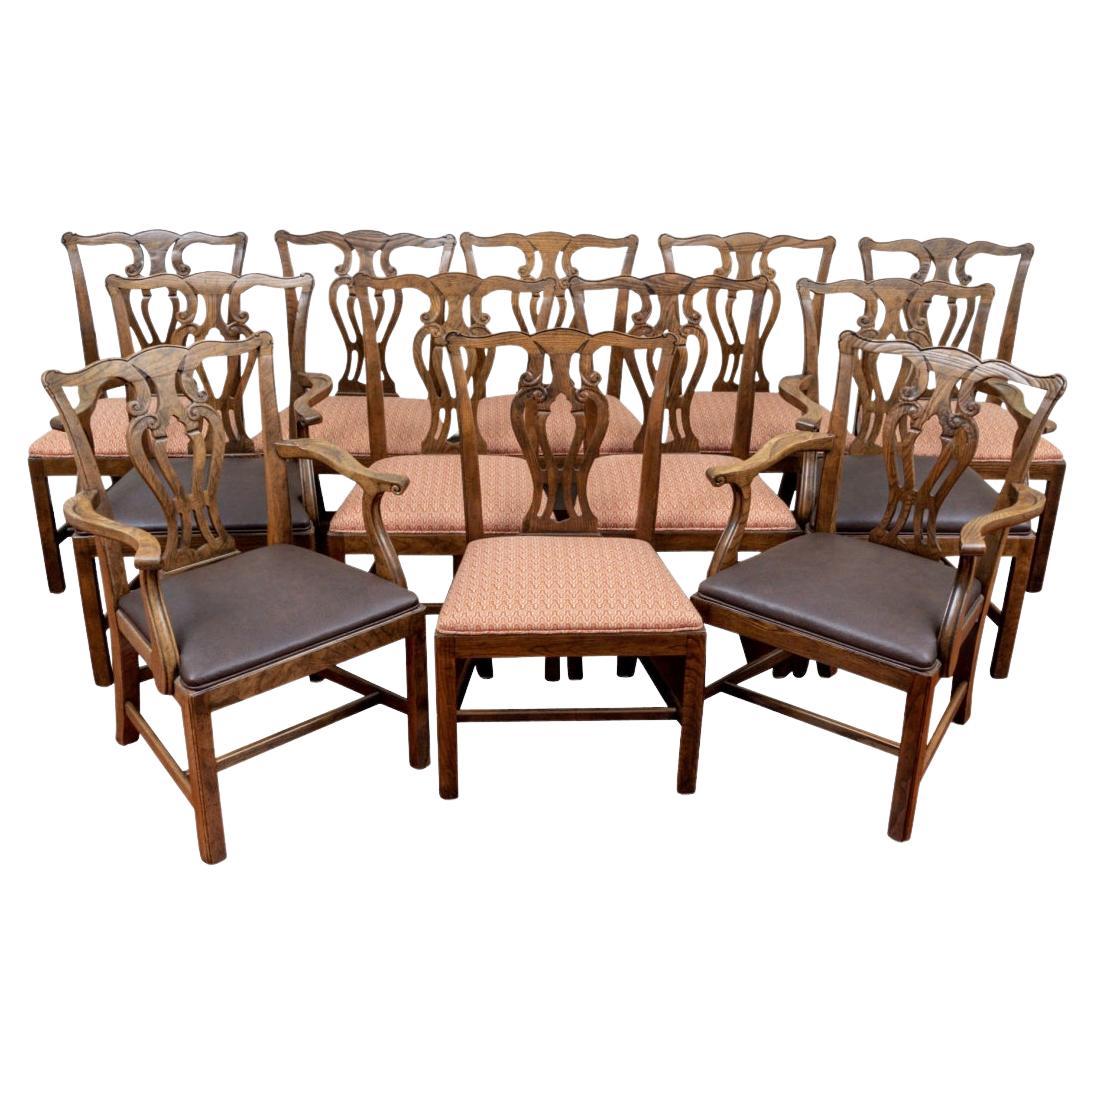 Set aus 12 Baker Furniture-Esszimmerstühlen - 4 Sesseln und 8 Beistellstühle